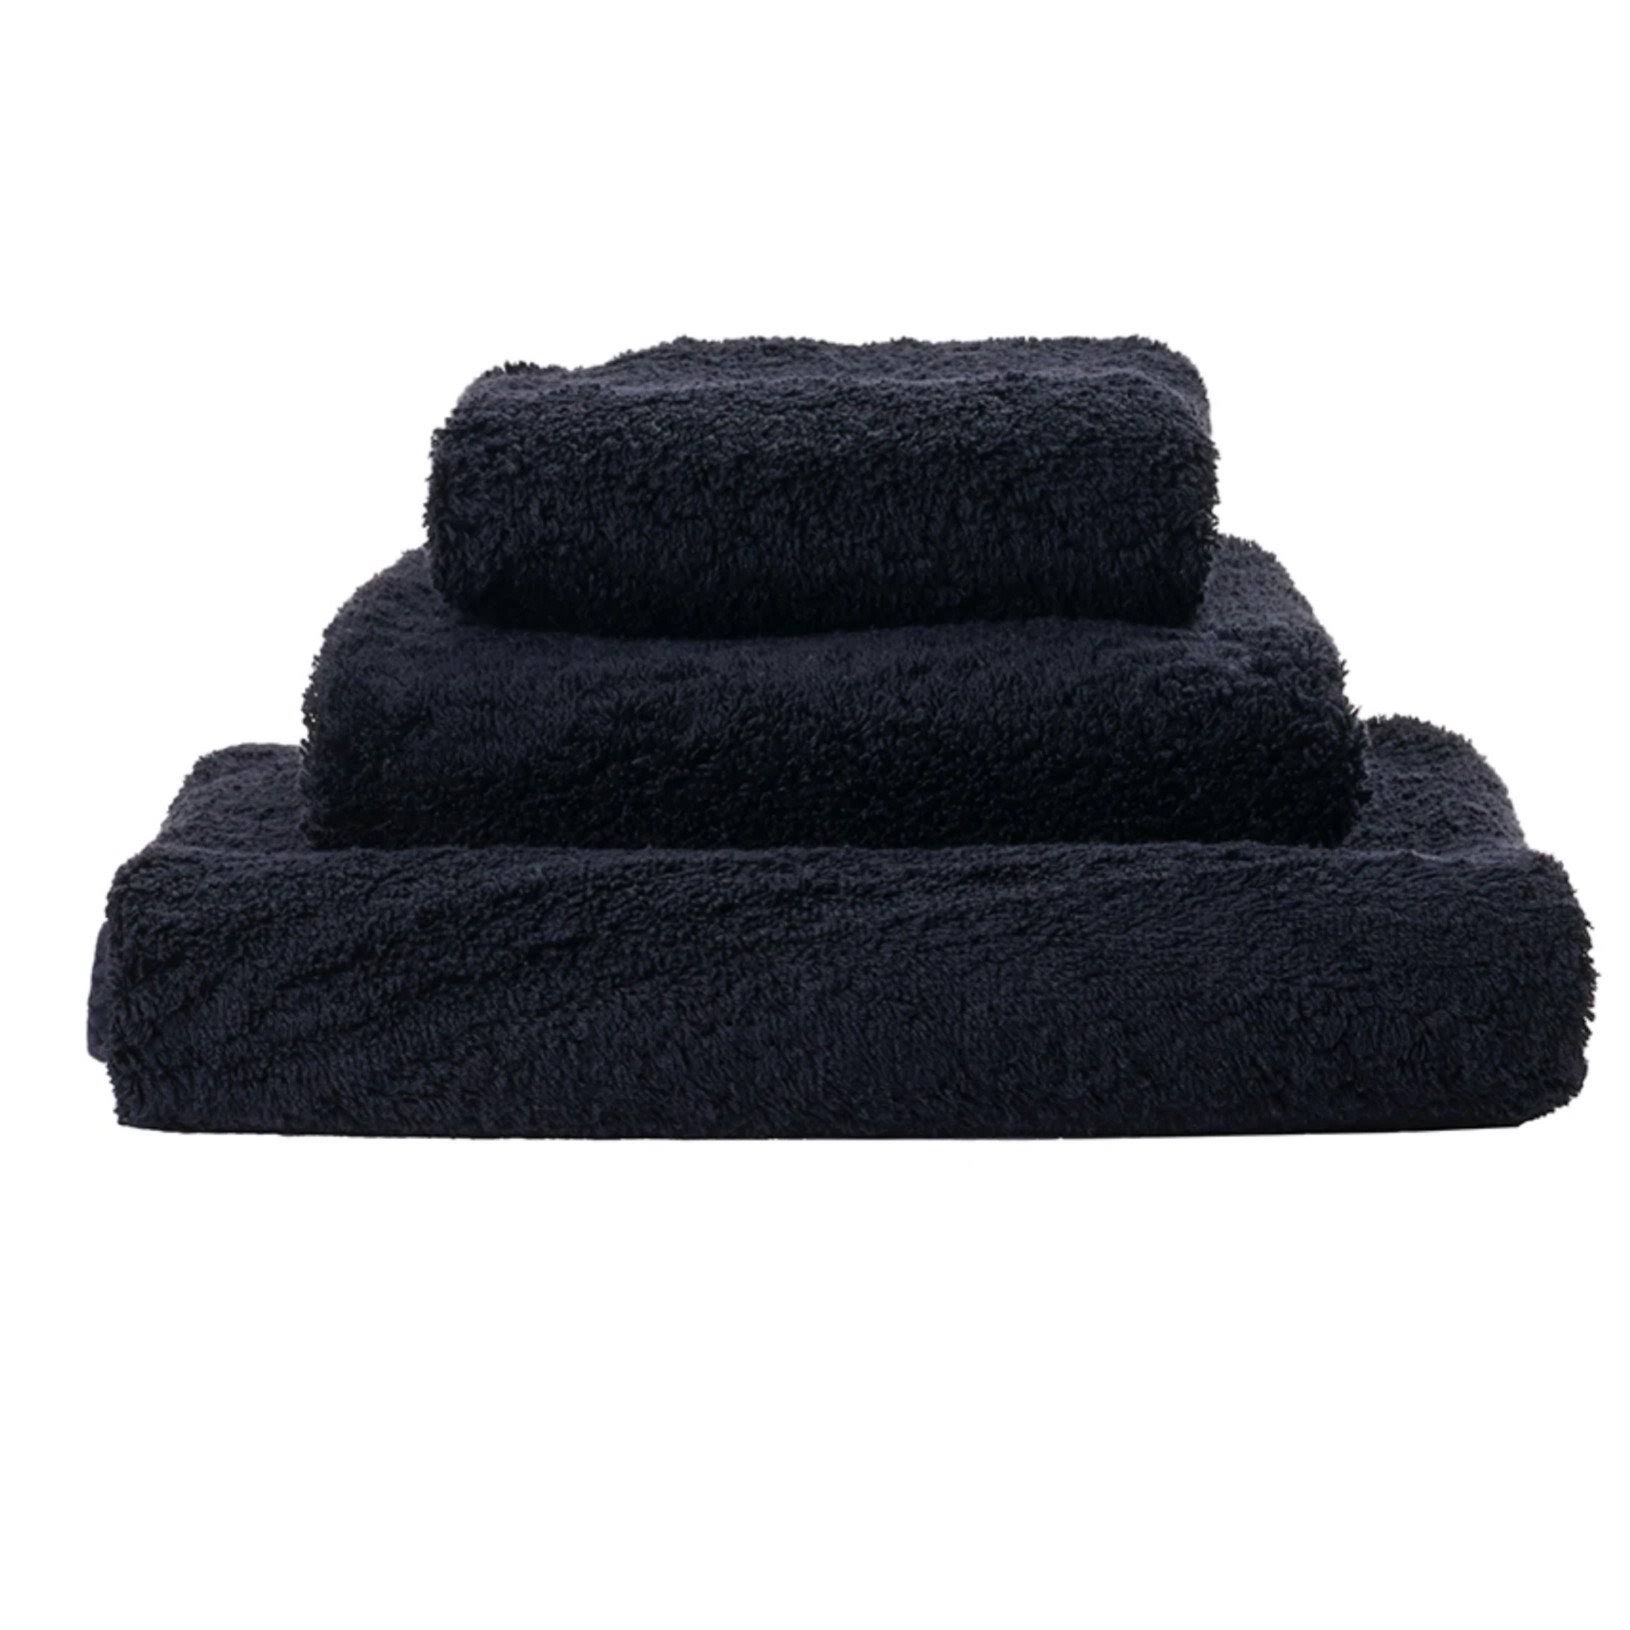 Abyss Super Pile Towels - Bath Towel 28x54" Black 990